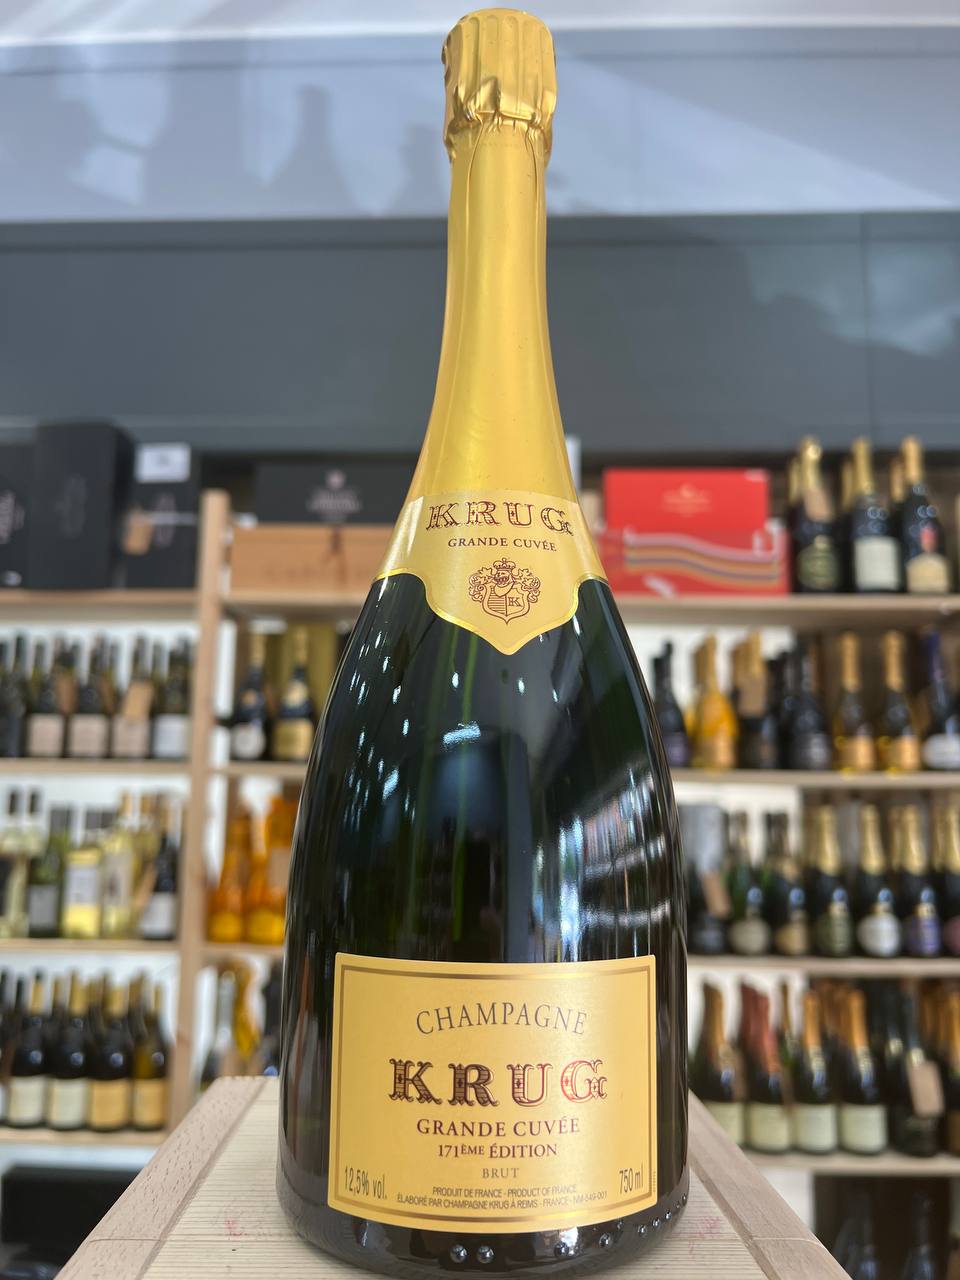 Champagne Krug Brut Grande Cuvée 171° Edizione